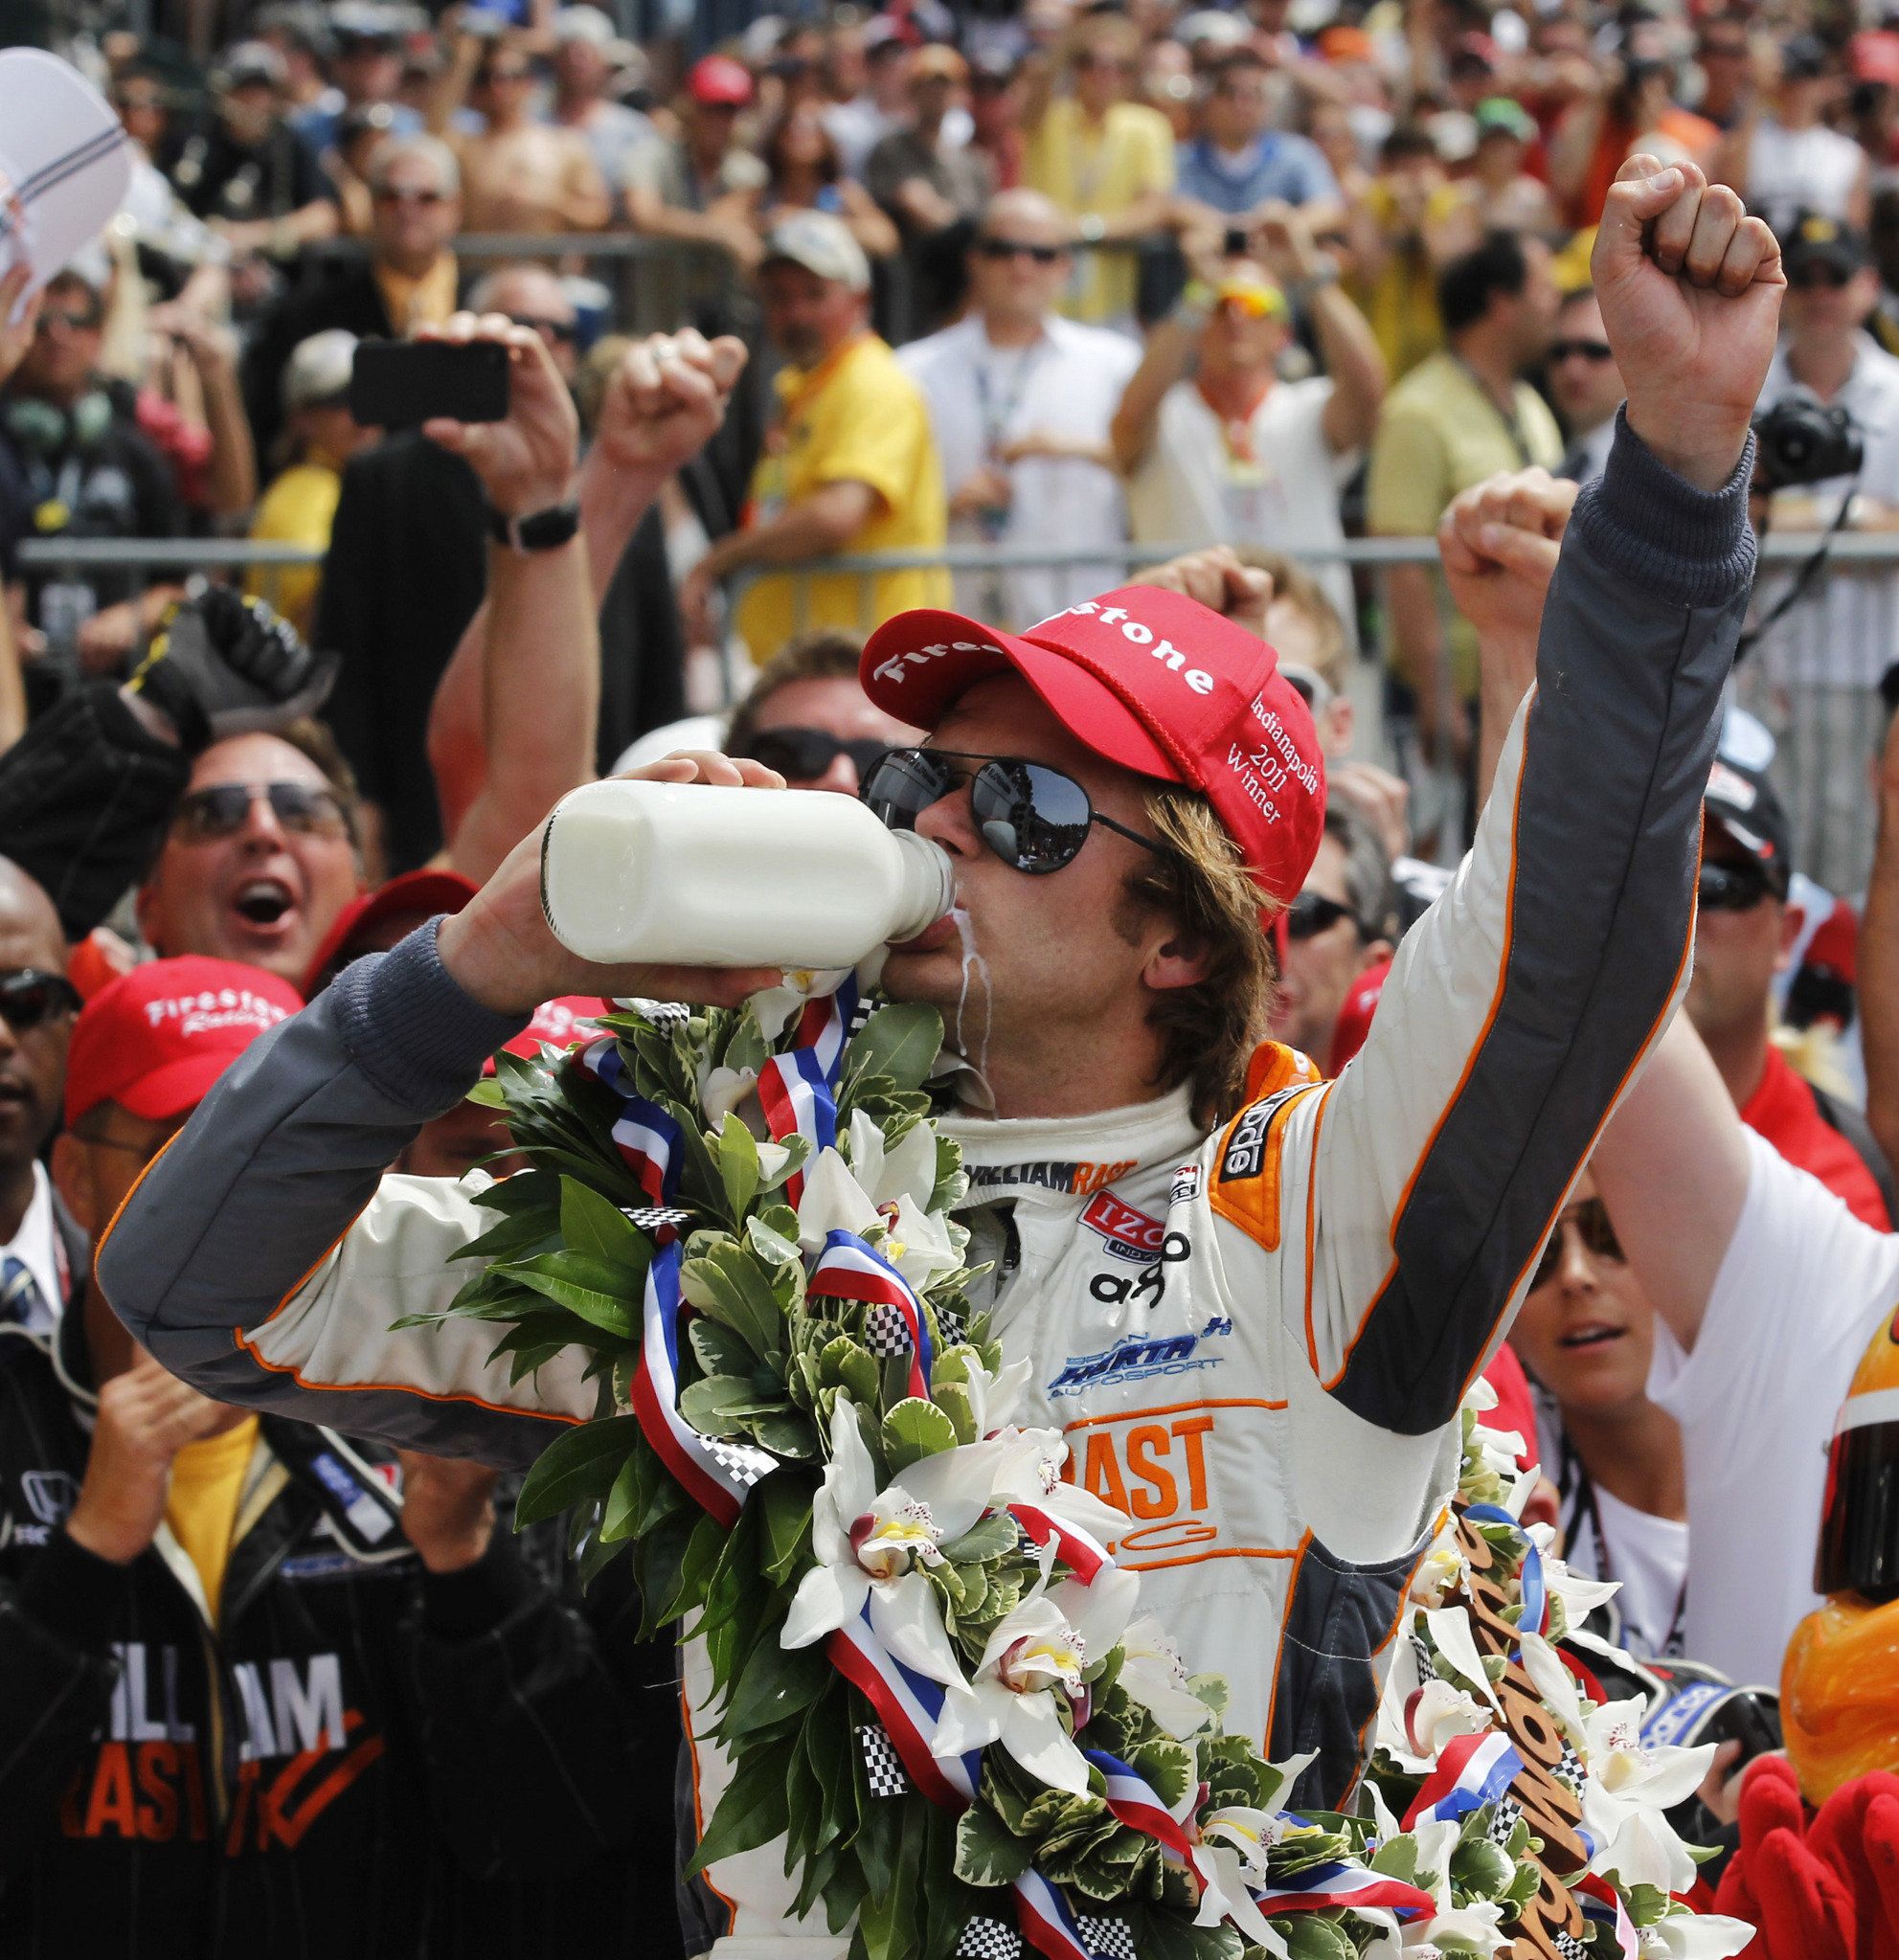 Dan Wheldon Wins 2011 Indy 500